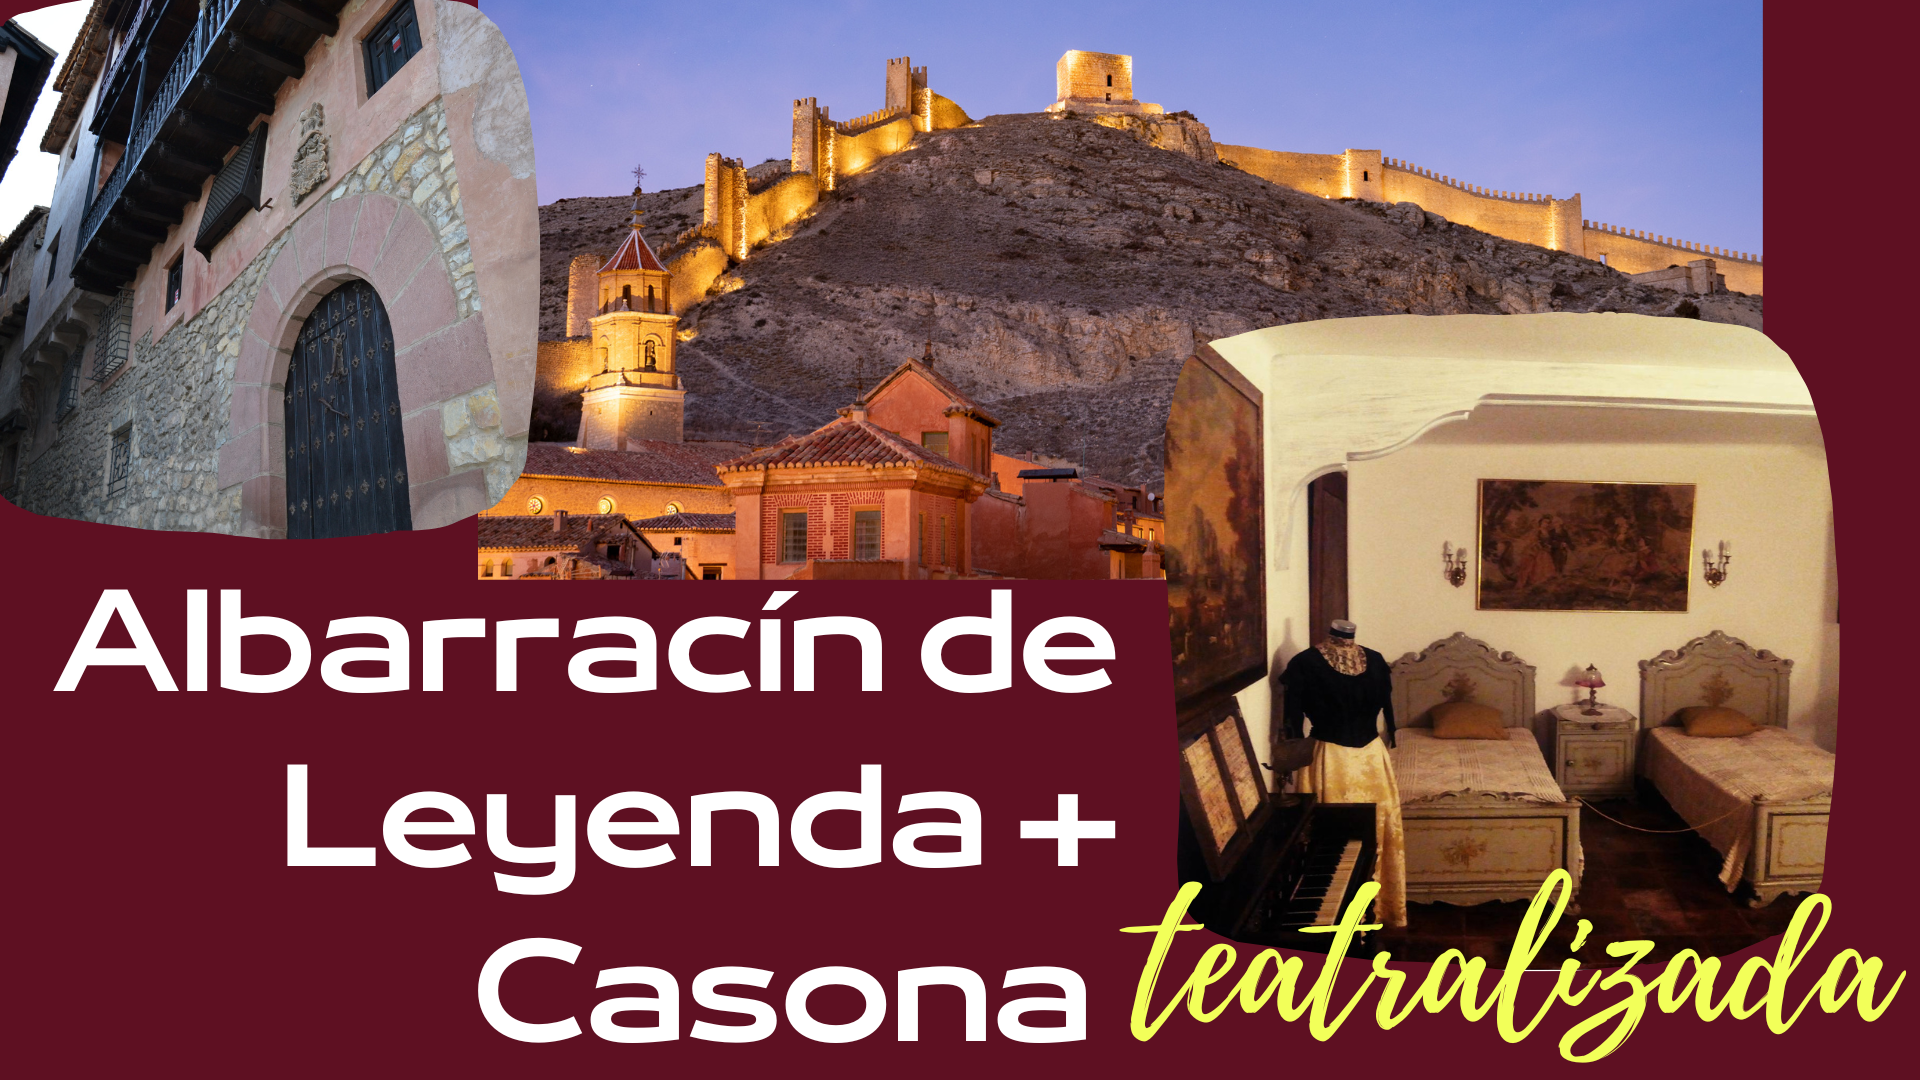 Sábado 9 de Julio, de visita guiada en Albarracín de Leyendas + Casa Museo teatralizada en su interior!